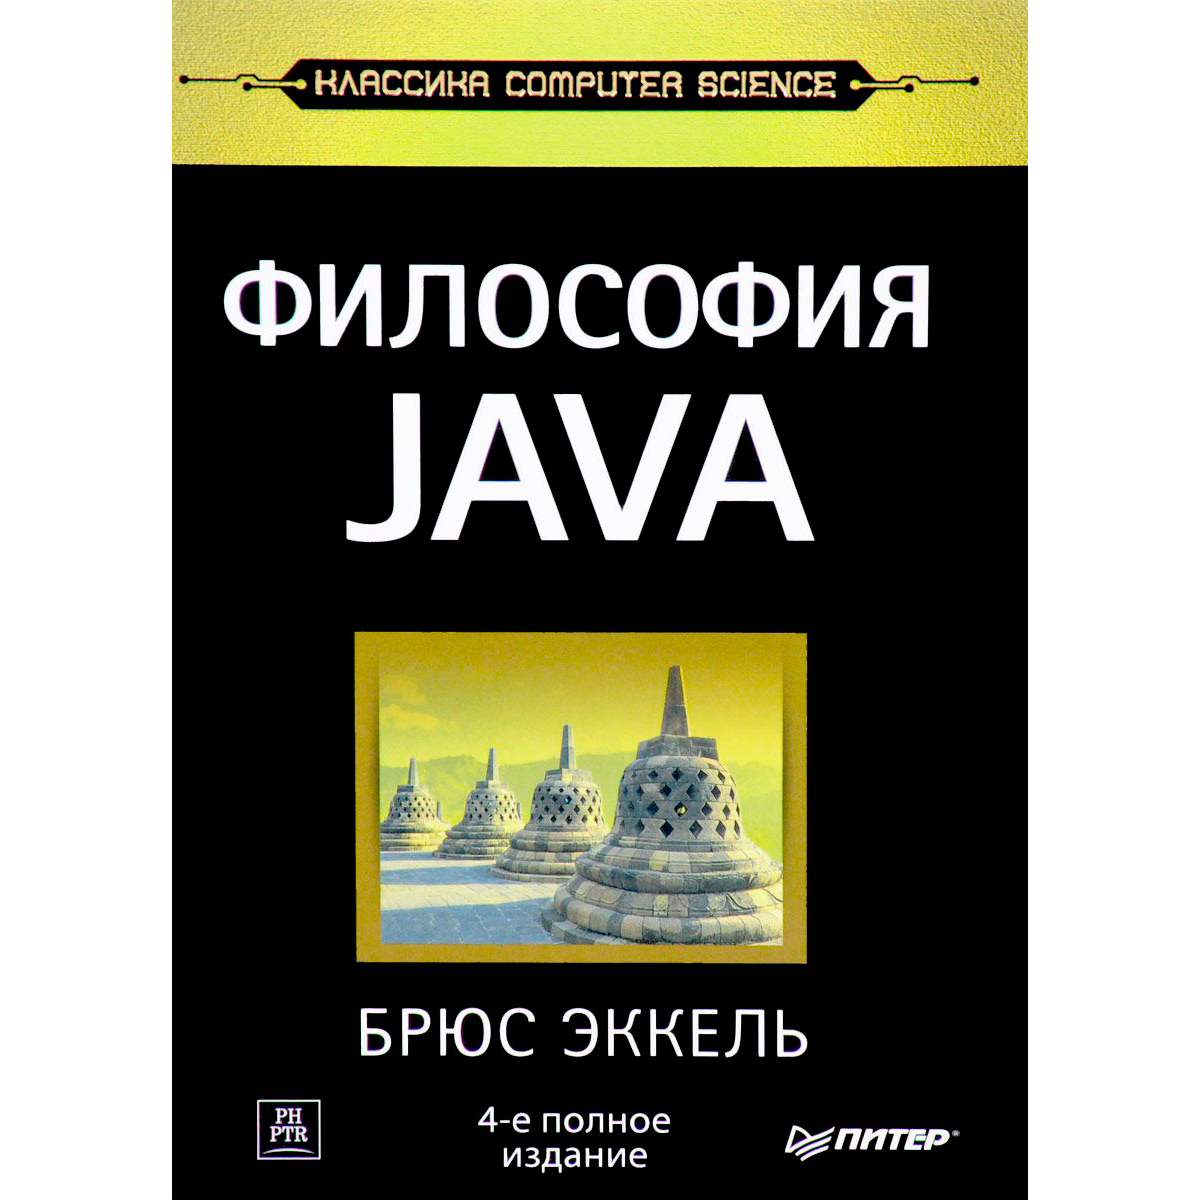 Эккель Б.: Философия Java. 4-Е Полное Изд. Классика Computer.